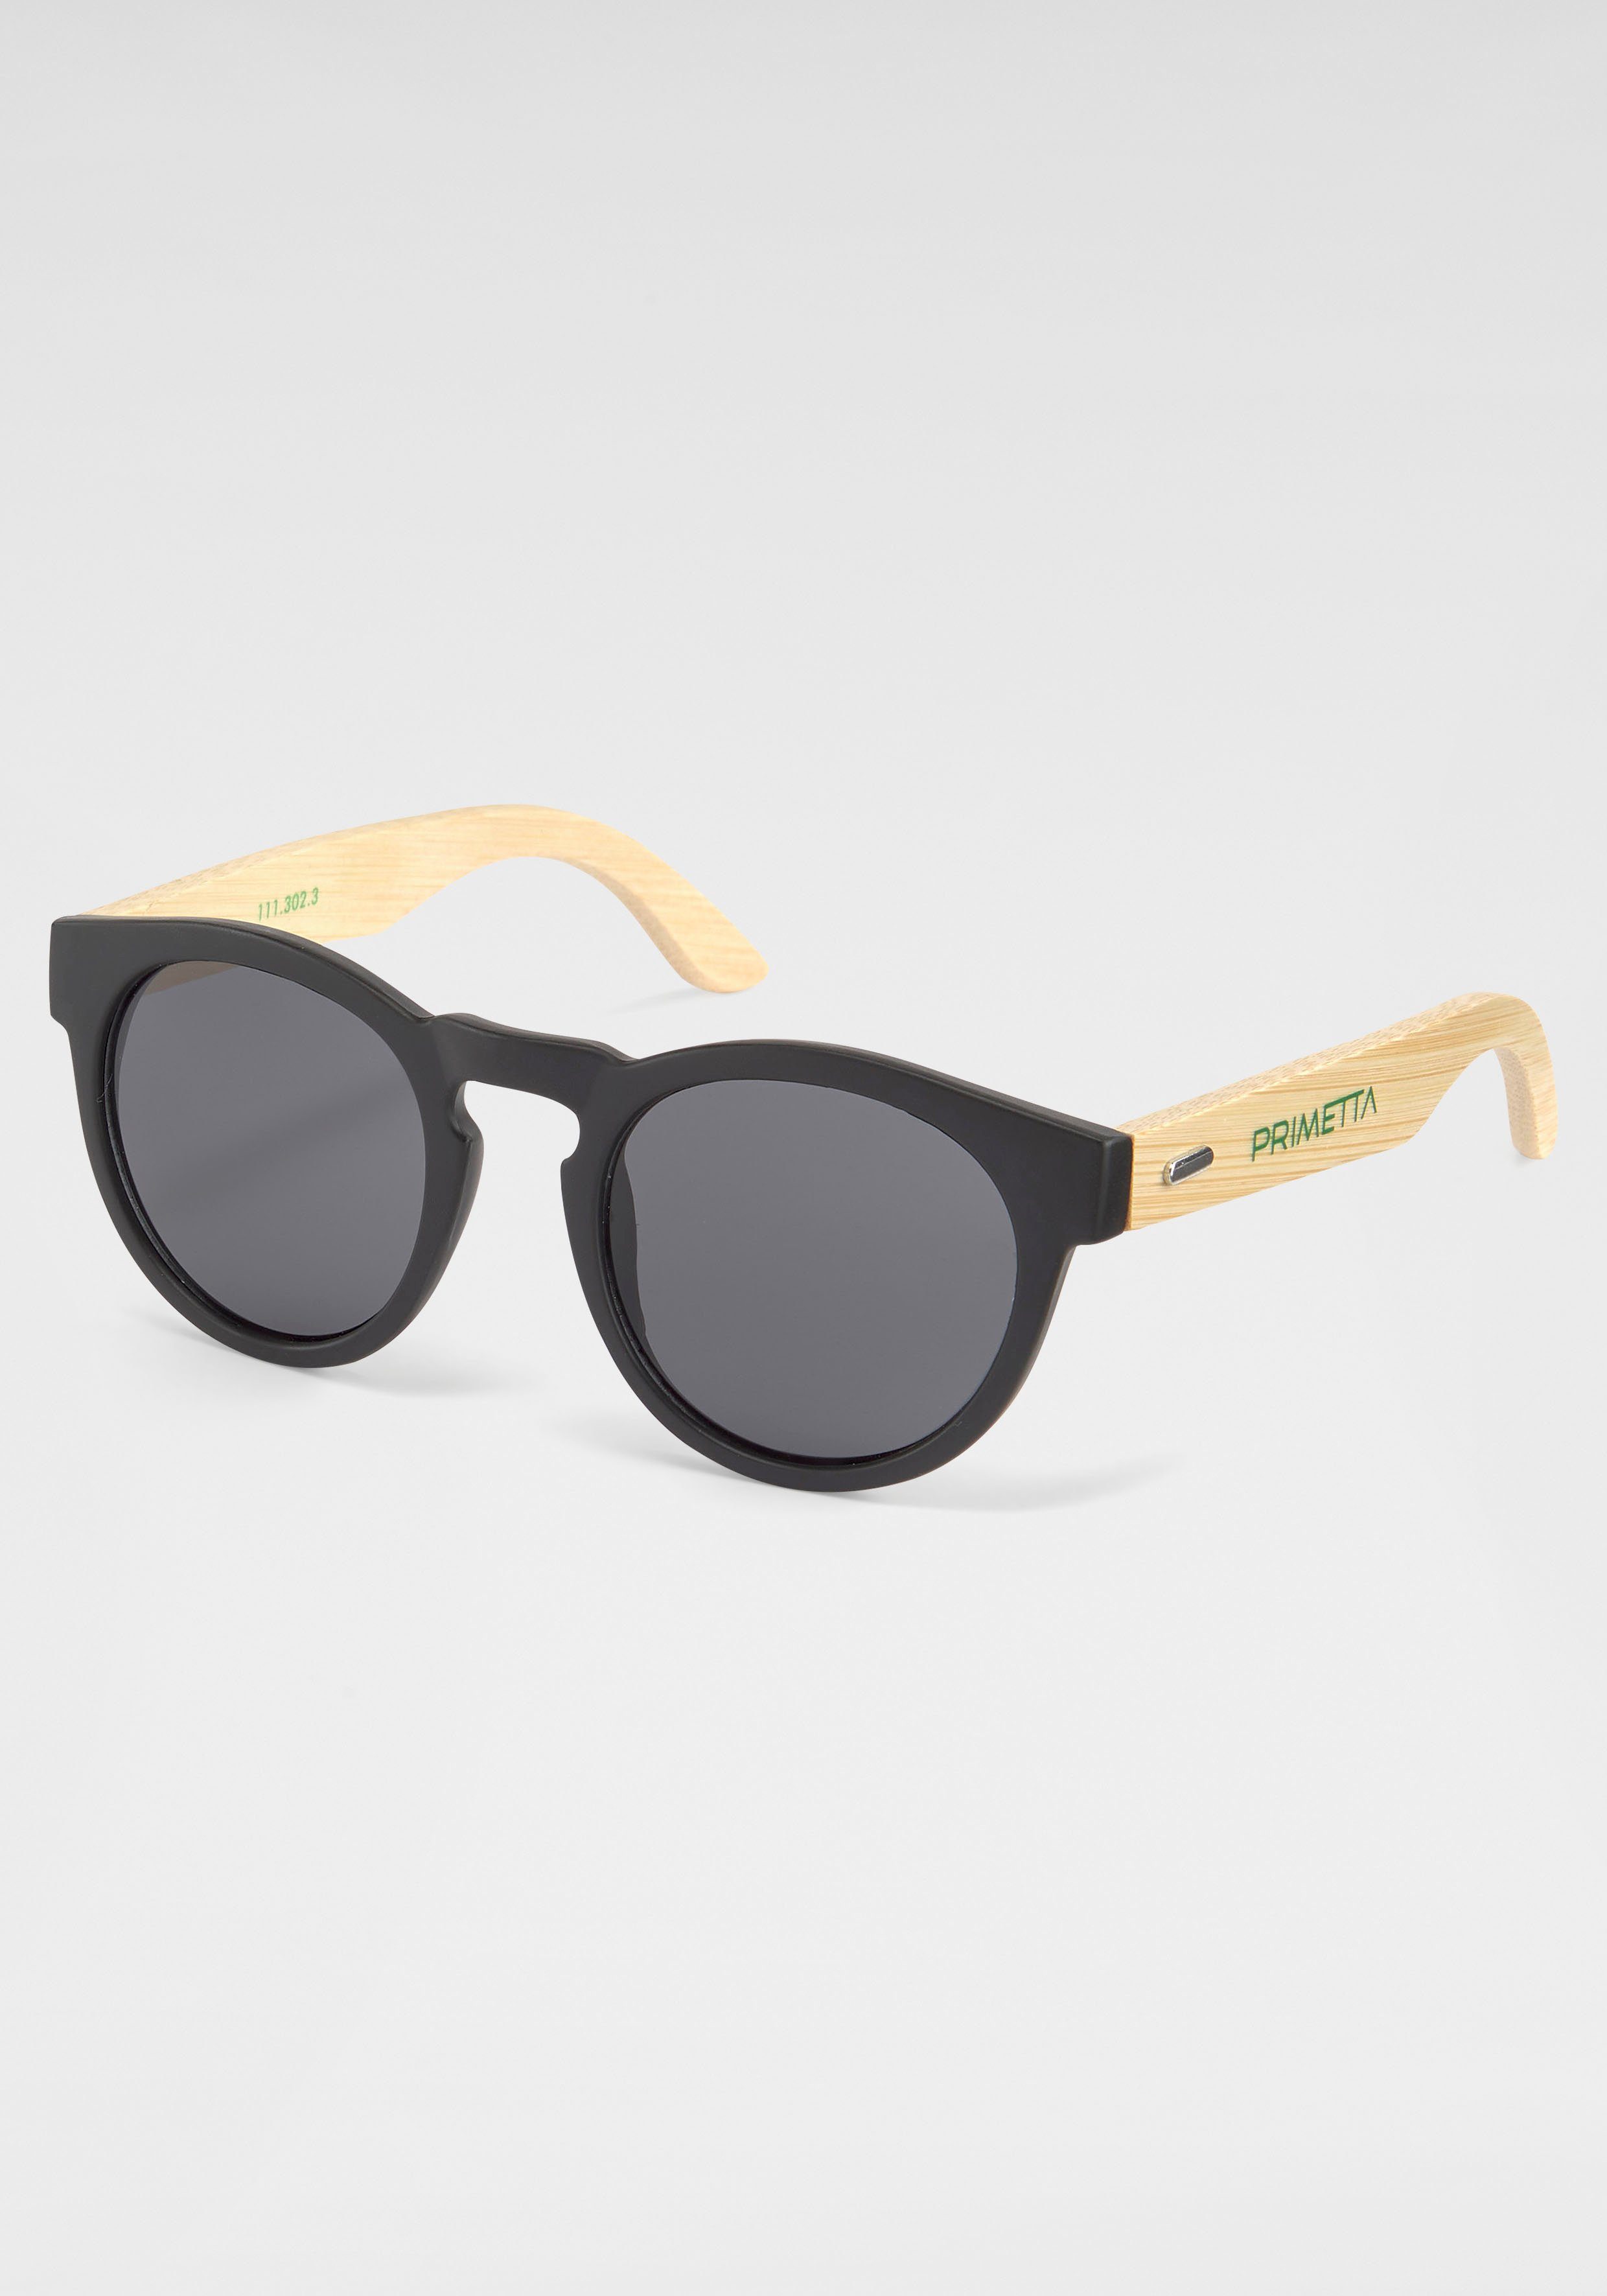 Sonnenbrille schwarz PRIMETTA Eyewear